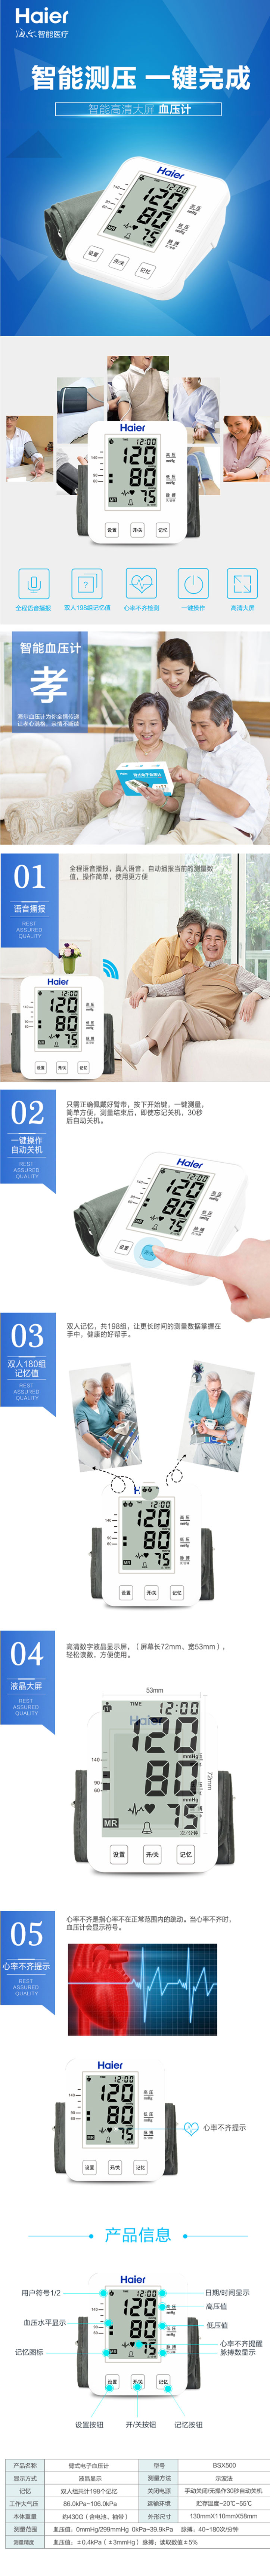 海尔臂式电子血压计-BSX500-_海尔(Haier)_医药护理用品_OfficeMate办公伙伴商.jpg